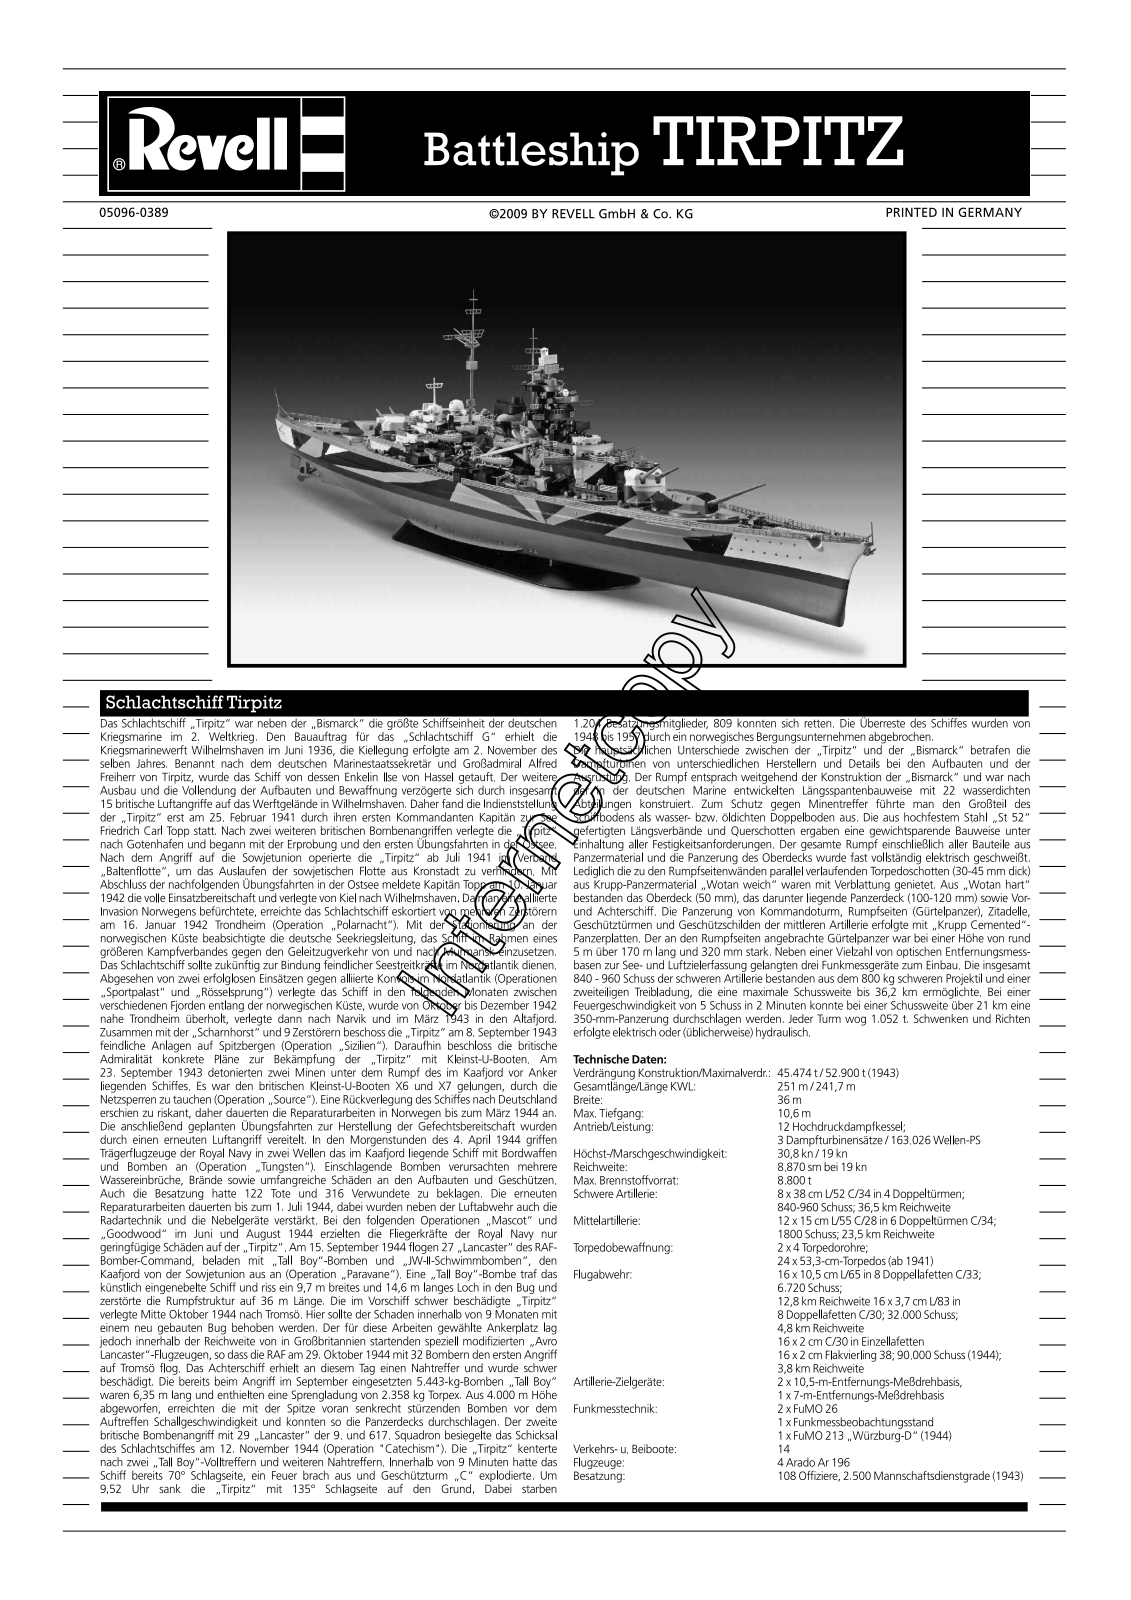 REVELL Battleship Tirpitz User Manual